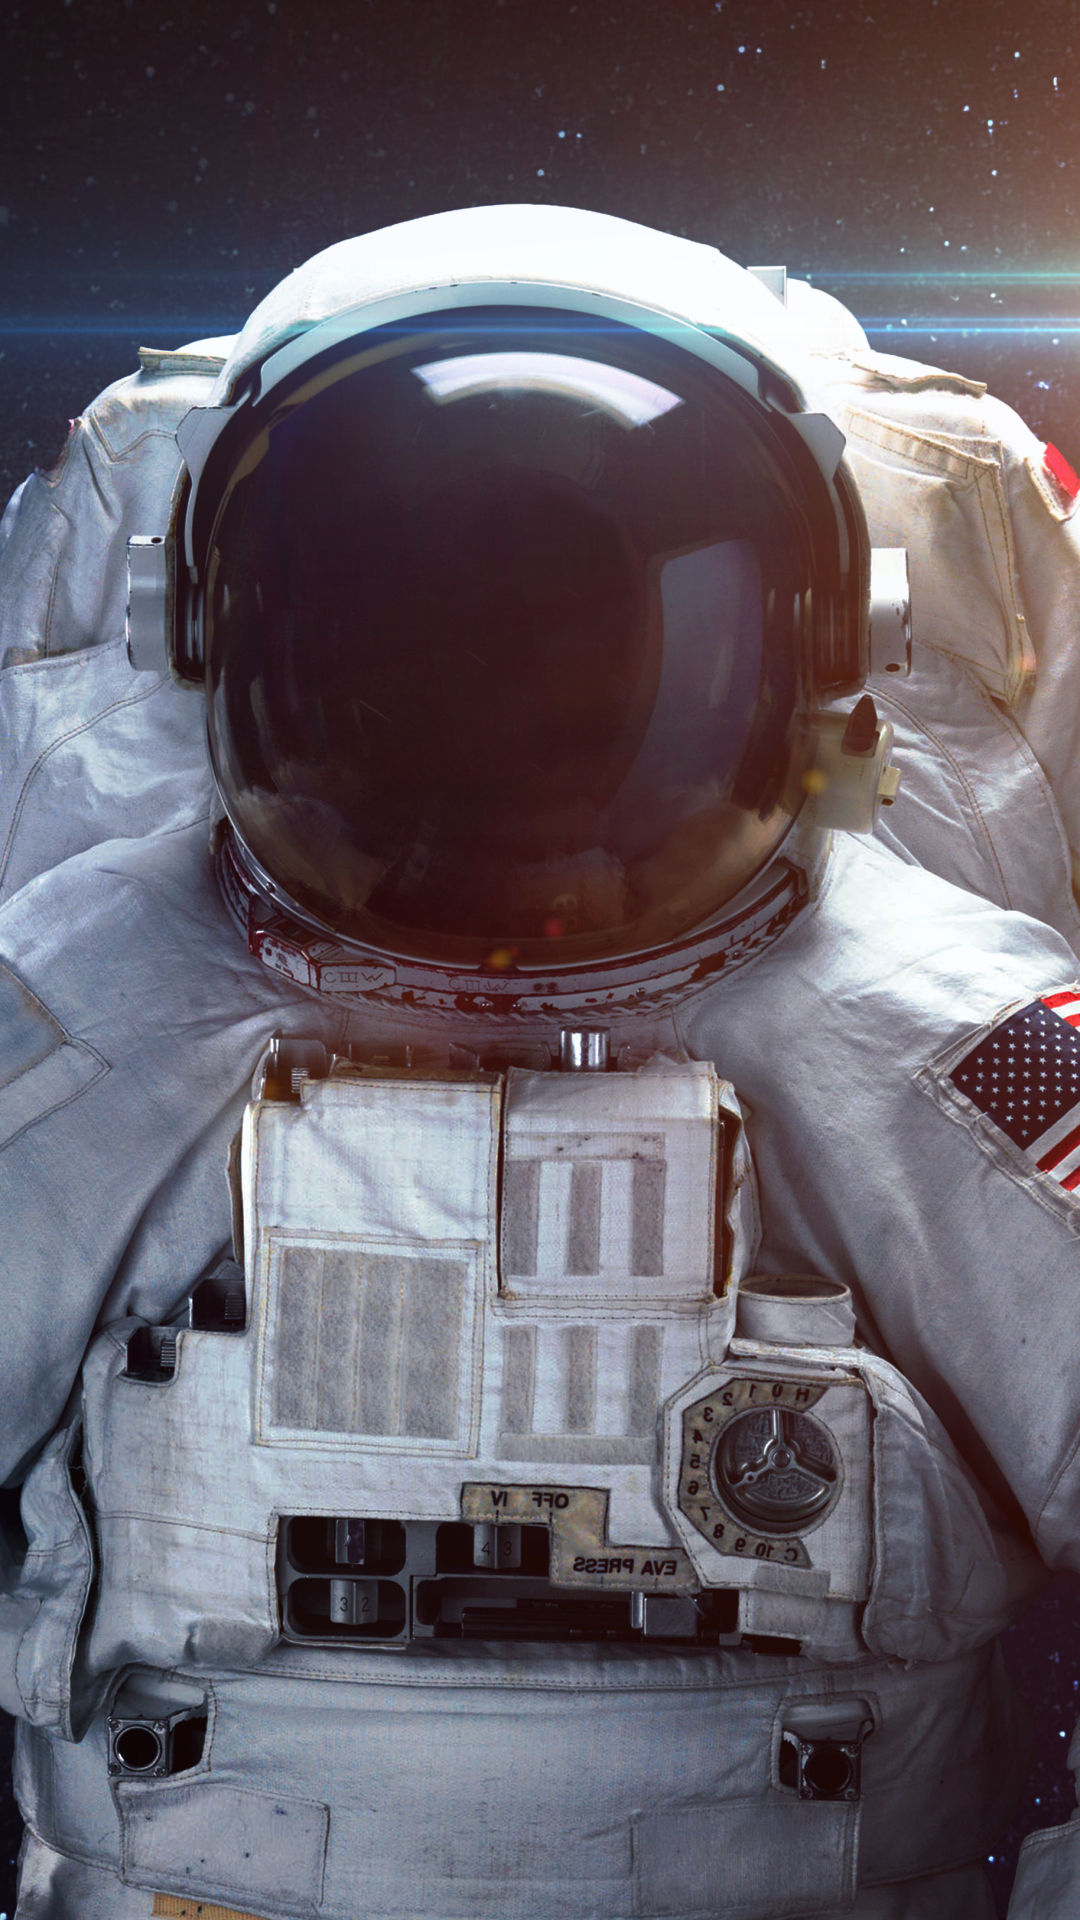 Descarga gratuita de fondo de pantalla para móvil de Estrellas, Espacio, Ciencia Ficción, Cosmos, Astronauta.